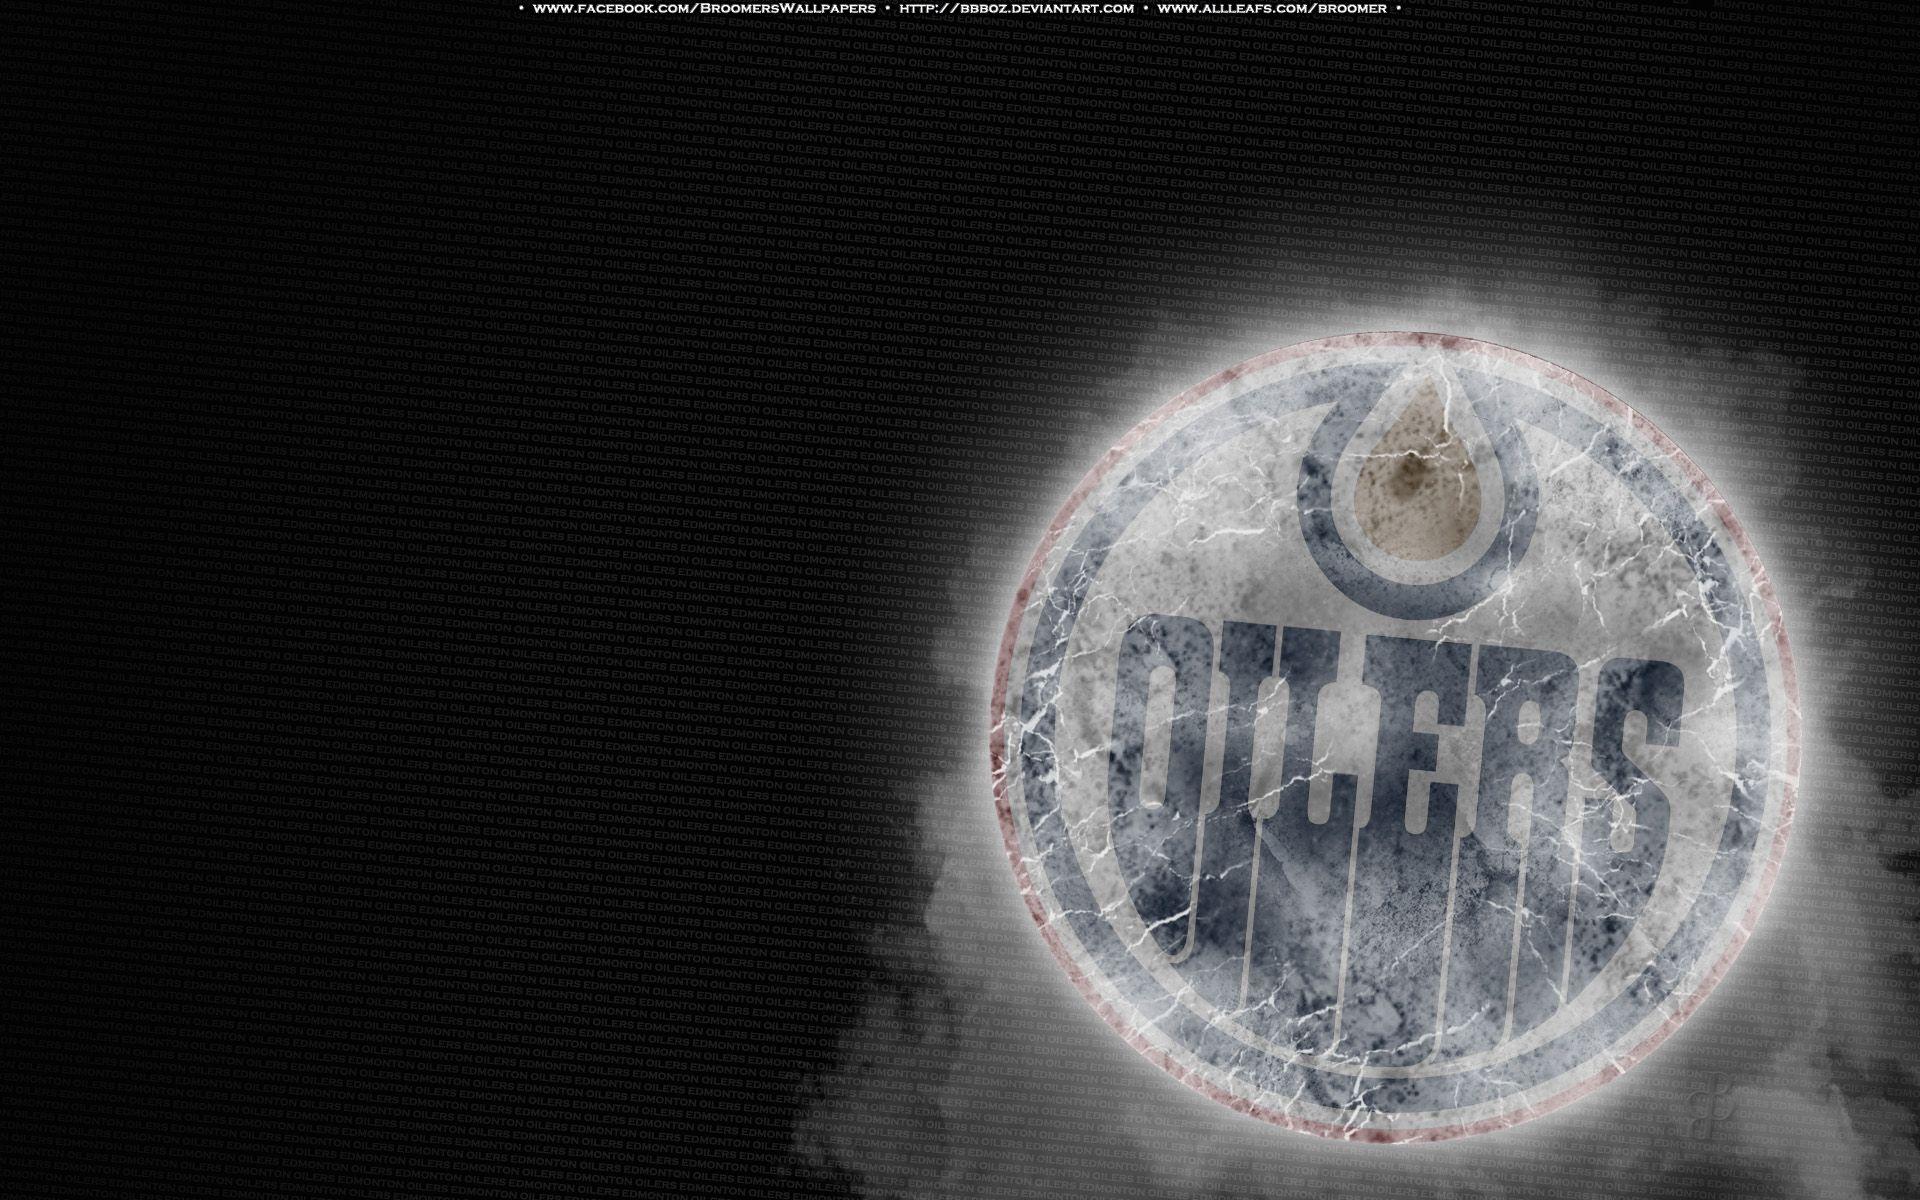 1920x1200 Tải xuống miễn phí Edmonton Oilers hình nền Edmonton Oilers background Trang 7 [1920x1200] cho Máy tính để bàn, Di động & Máy tính bảng của bạn.  Khám phá Edmonton Oilers Wallpaper.  Nhl Logo Wallpaper, NHL Desktop Wallpaper, NHL Wallpaper and Background